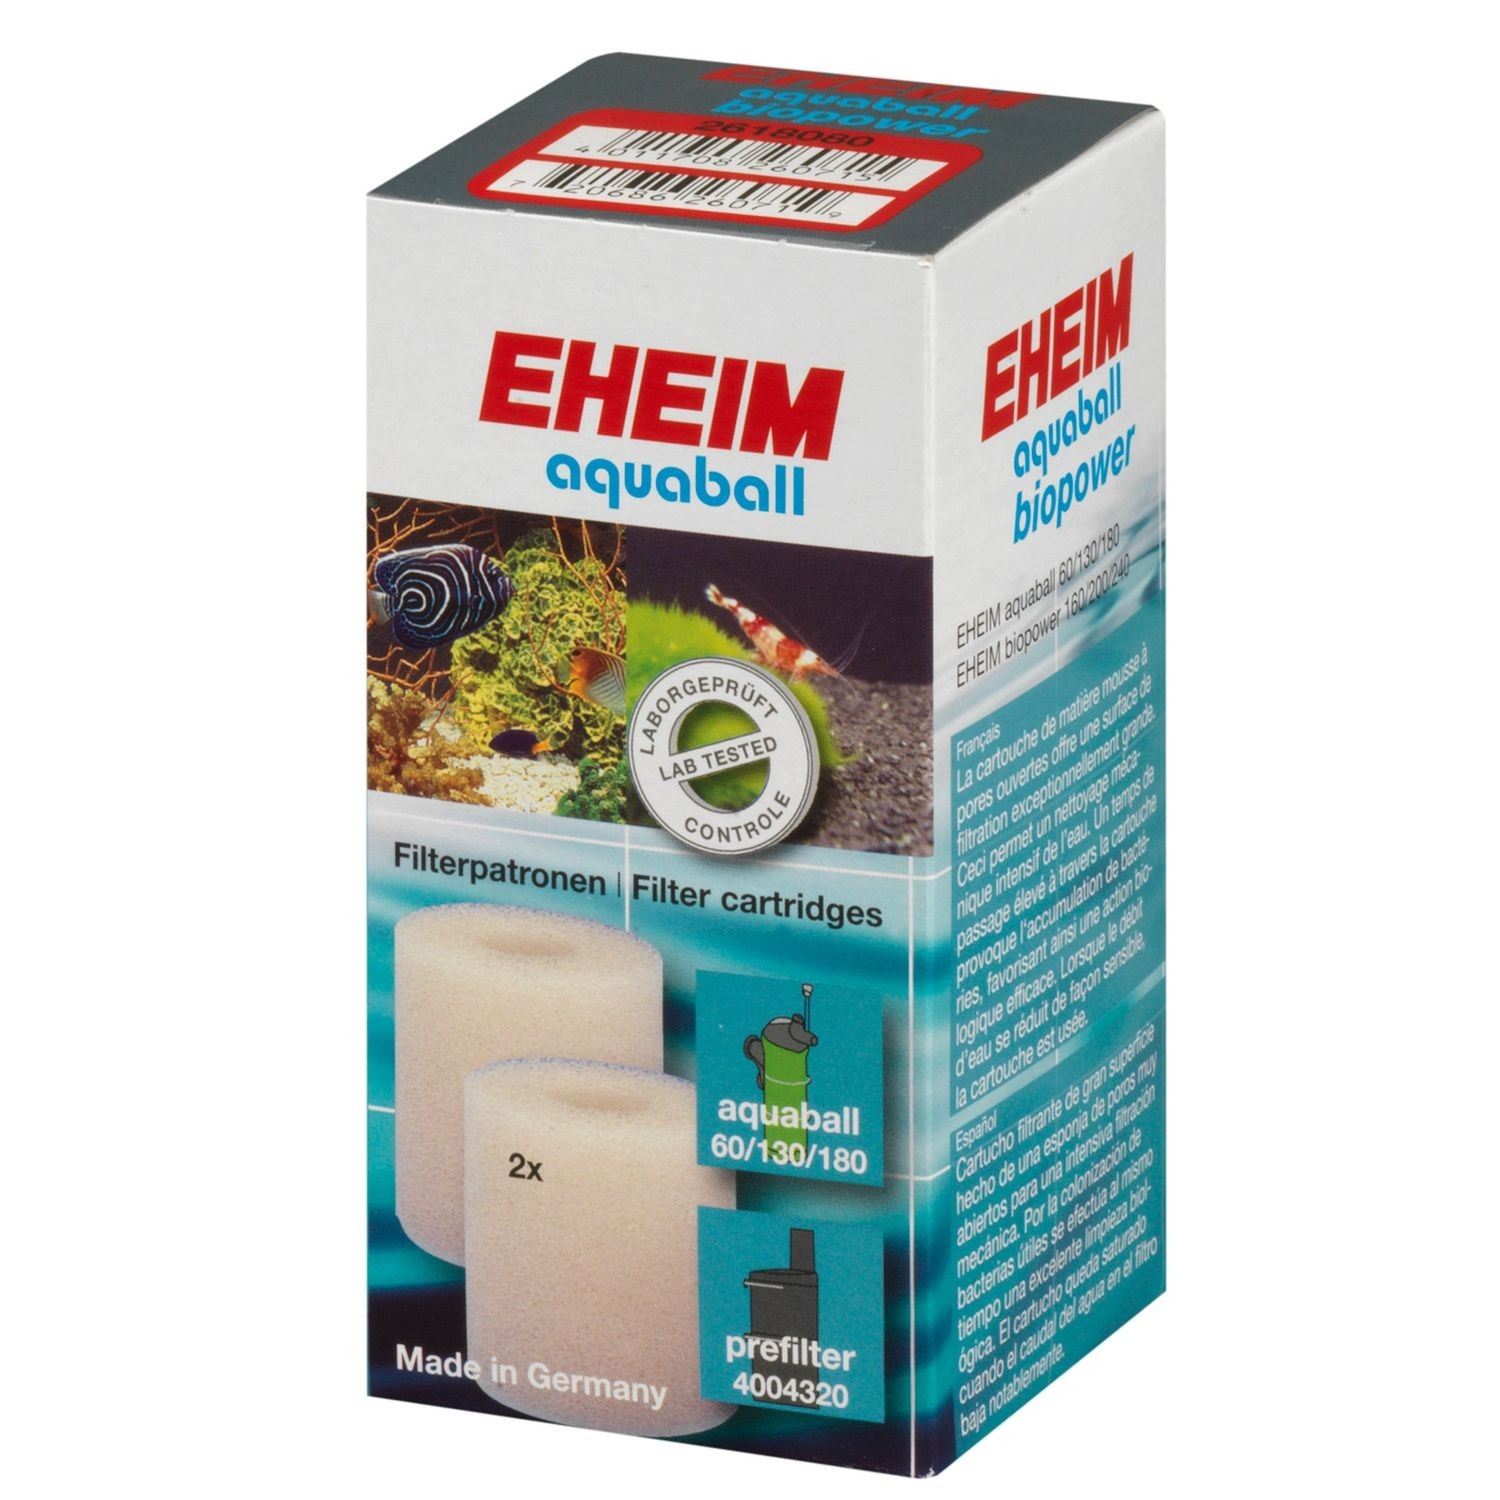 Cartouche de filtration pour filtre EHEIM Aquaball 60 / 130 / 180 et Biopower 160 / 200 / 240